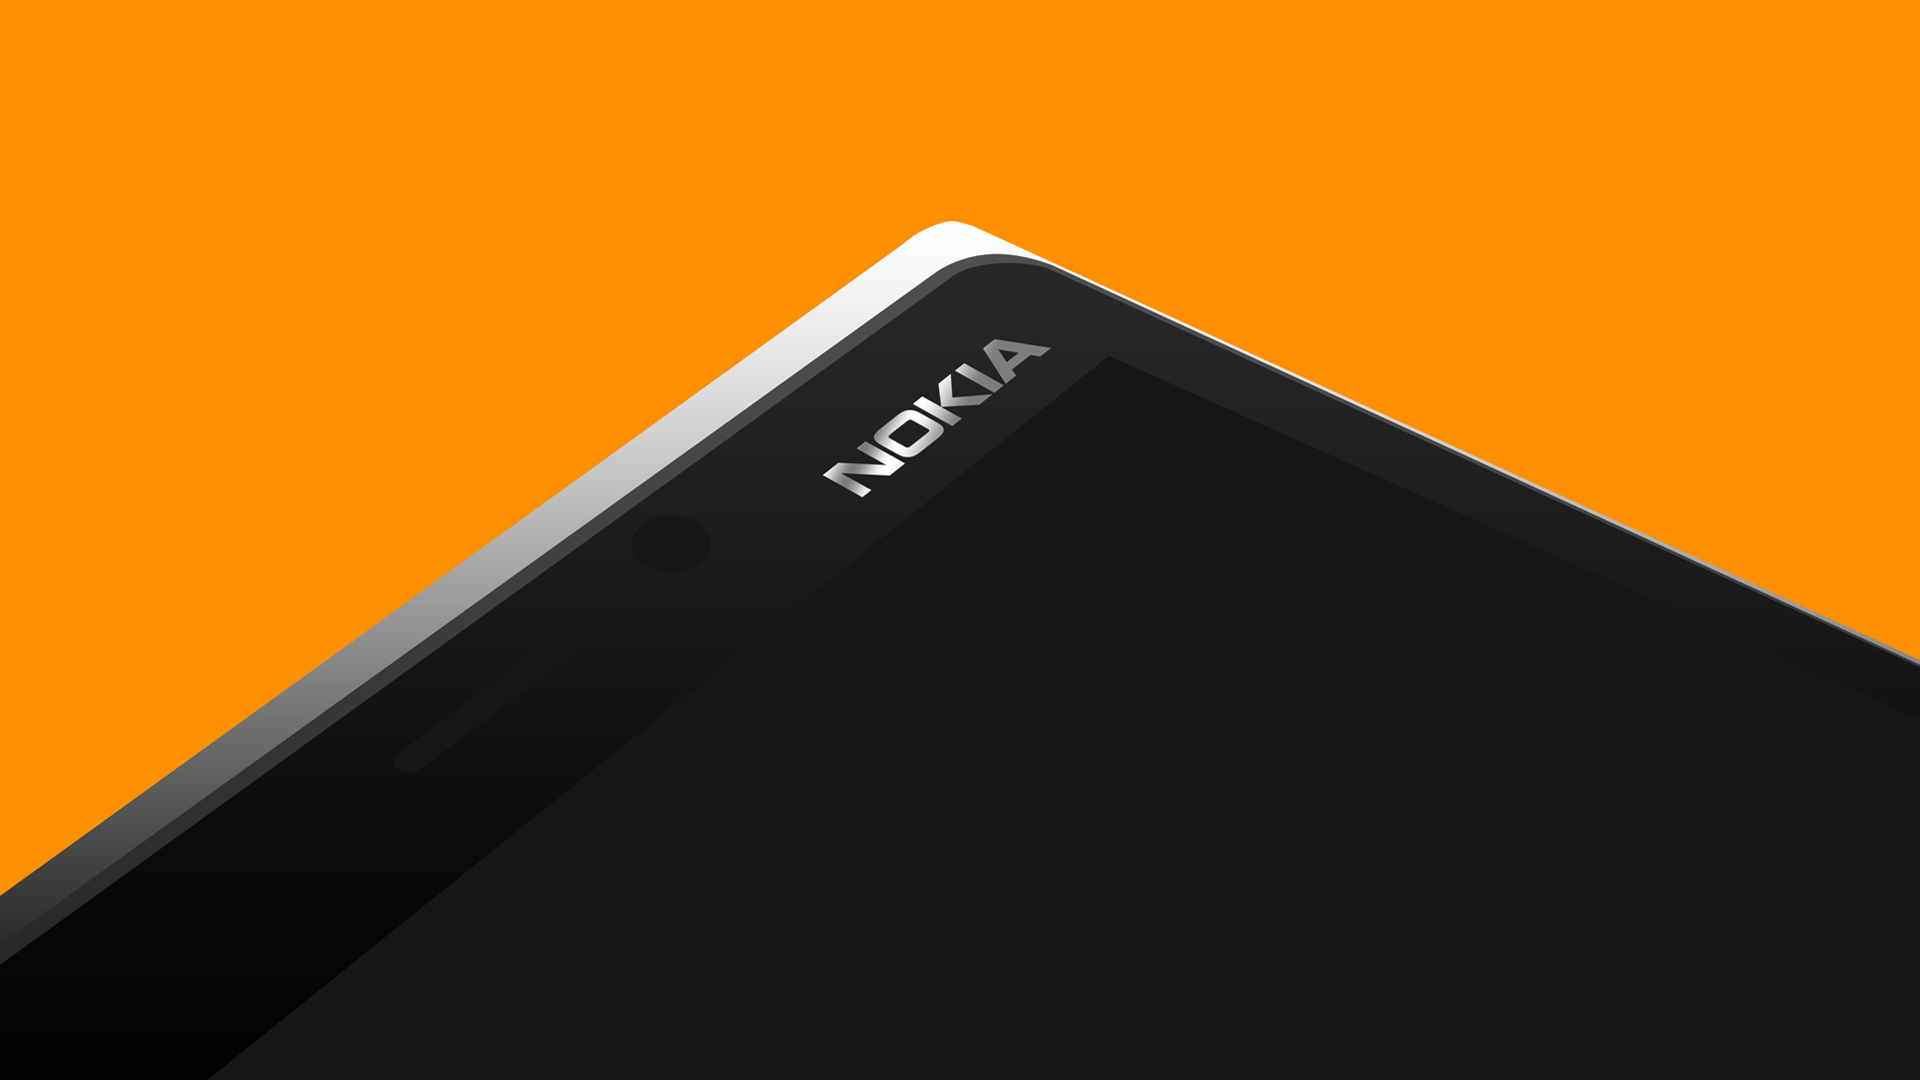 يحتوي Nokia 9 PureView على قارئ لبصمات الأصابع أسفل الشاشة